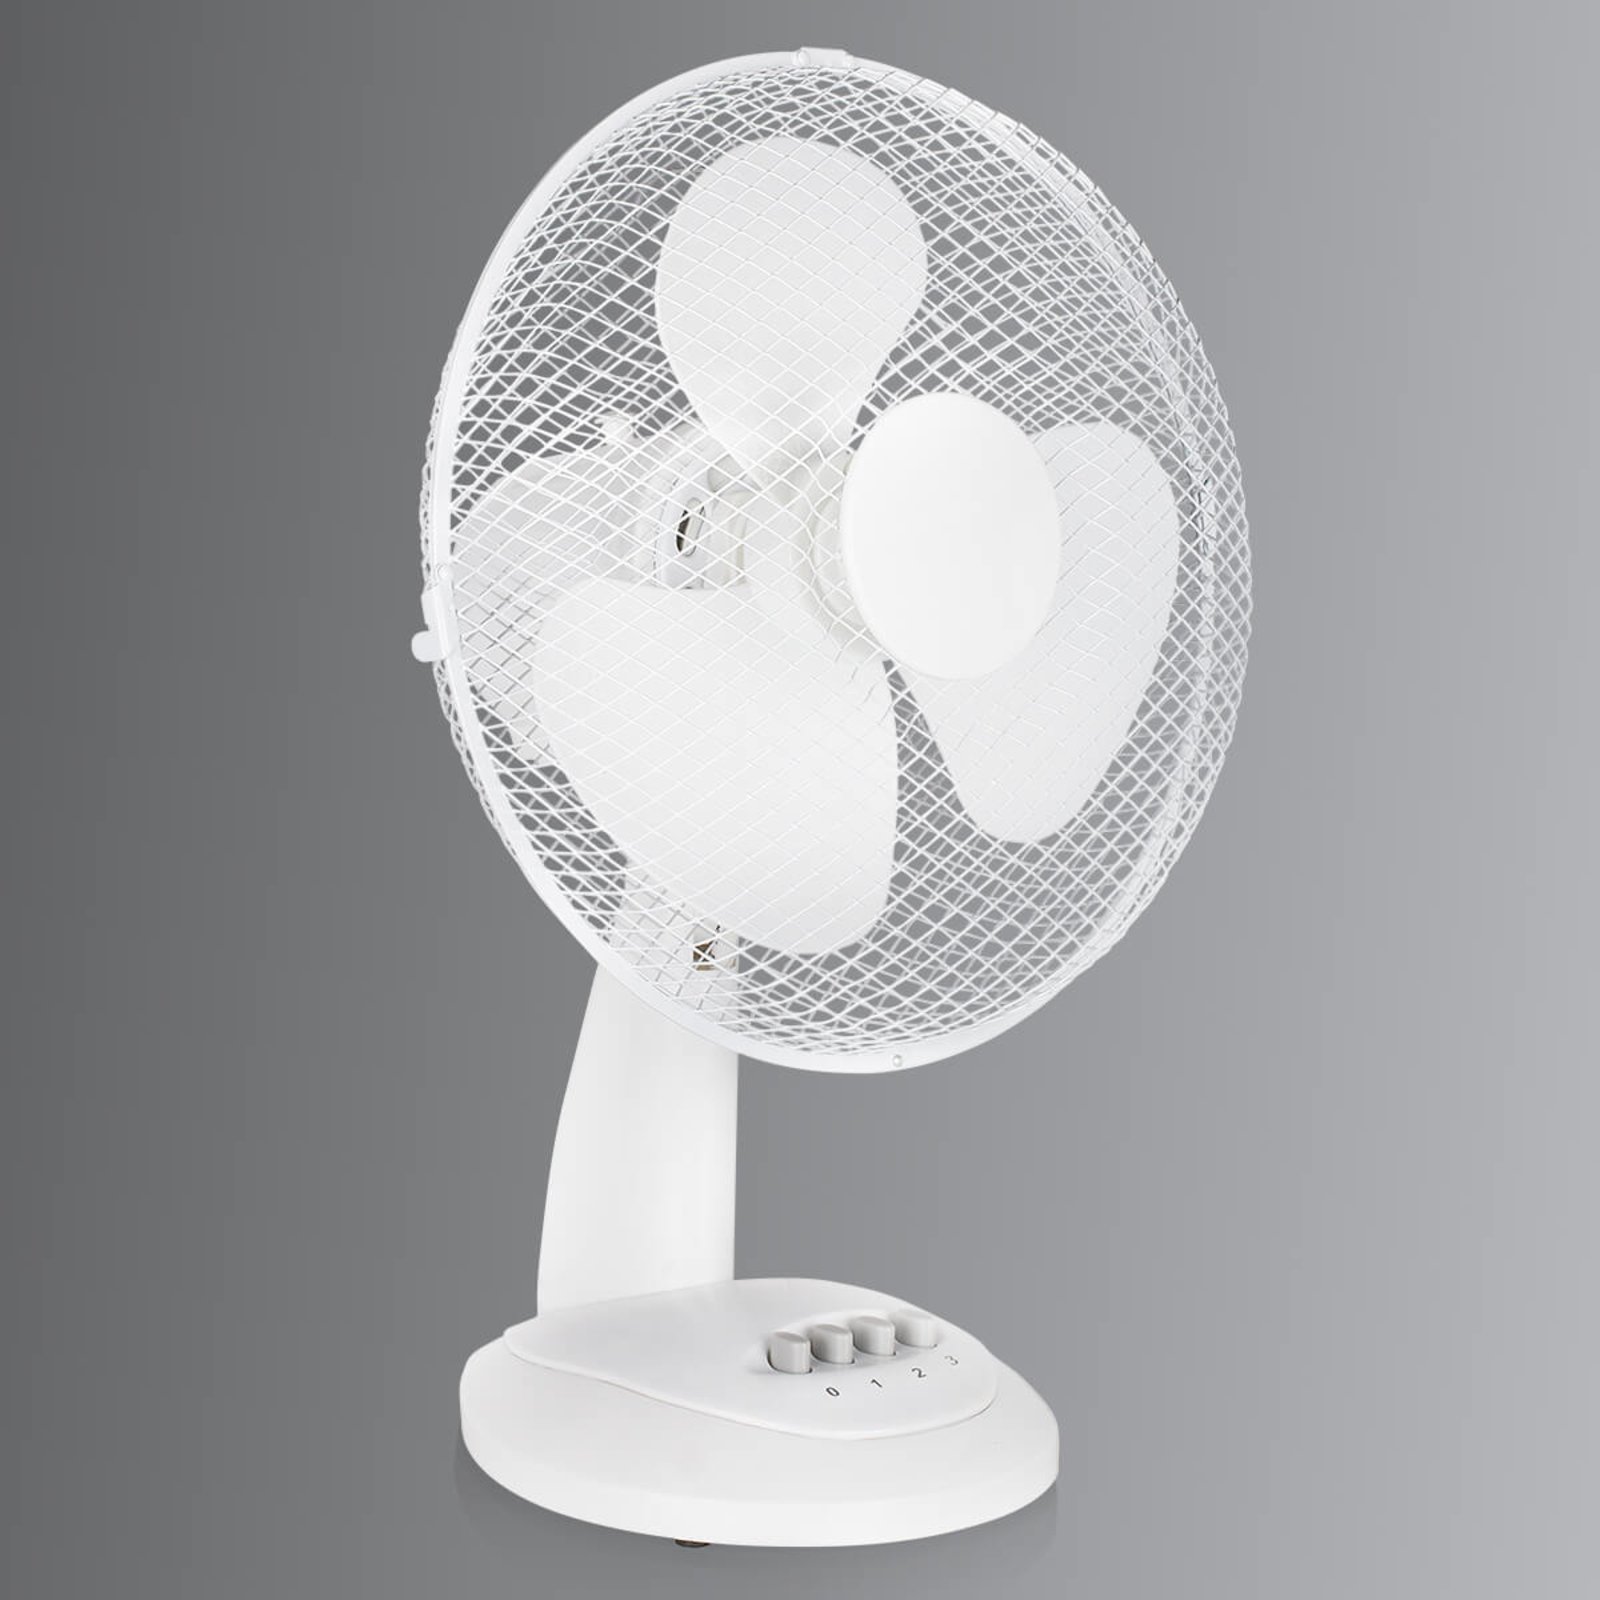 Oscillating VU5930 pedestal fan